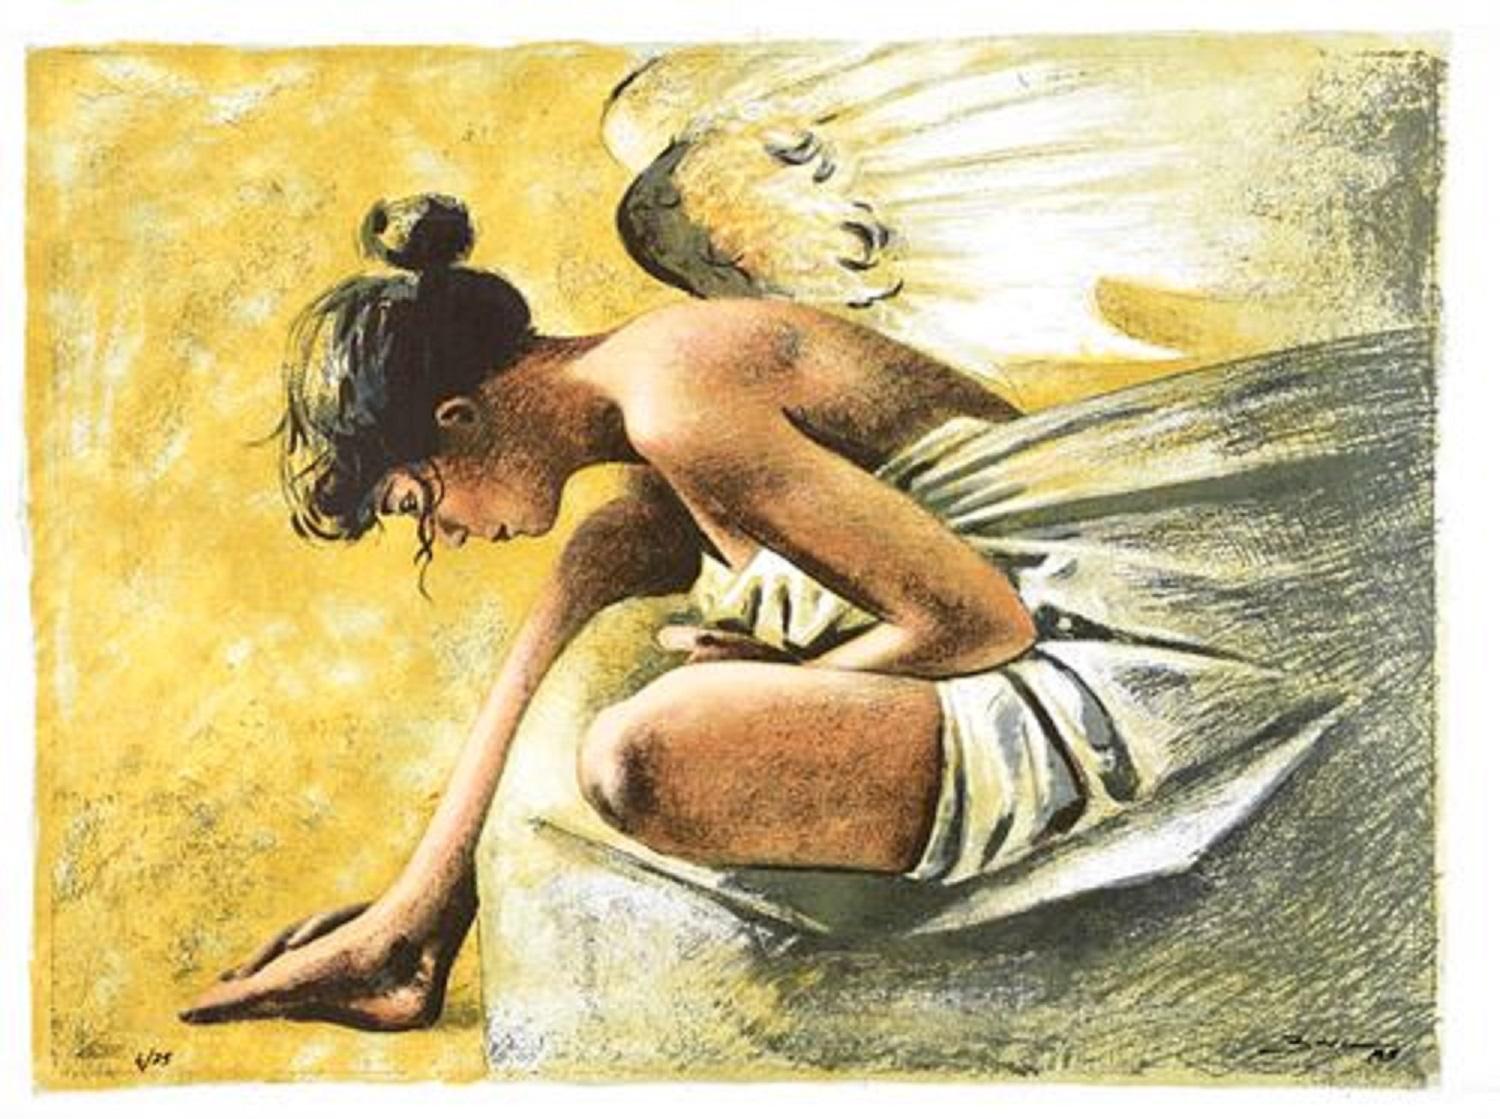 Manuel Barca (Spanien, 1964)
Angie", 1995
Siebdruck auf Leinwand
19,7 x 27,6 Zoll (50 x 70 cm)
Auflage von 75
Ungerahmt
ID: BAR1223-002-075
Vom Autor handsigniert